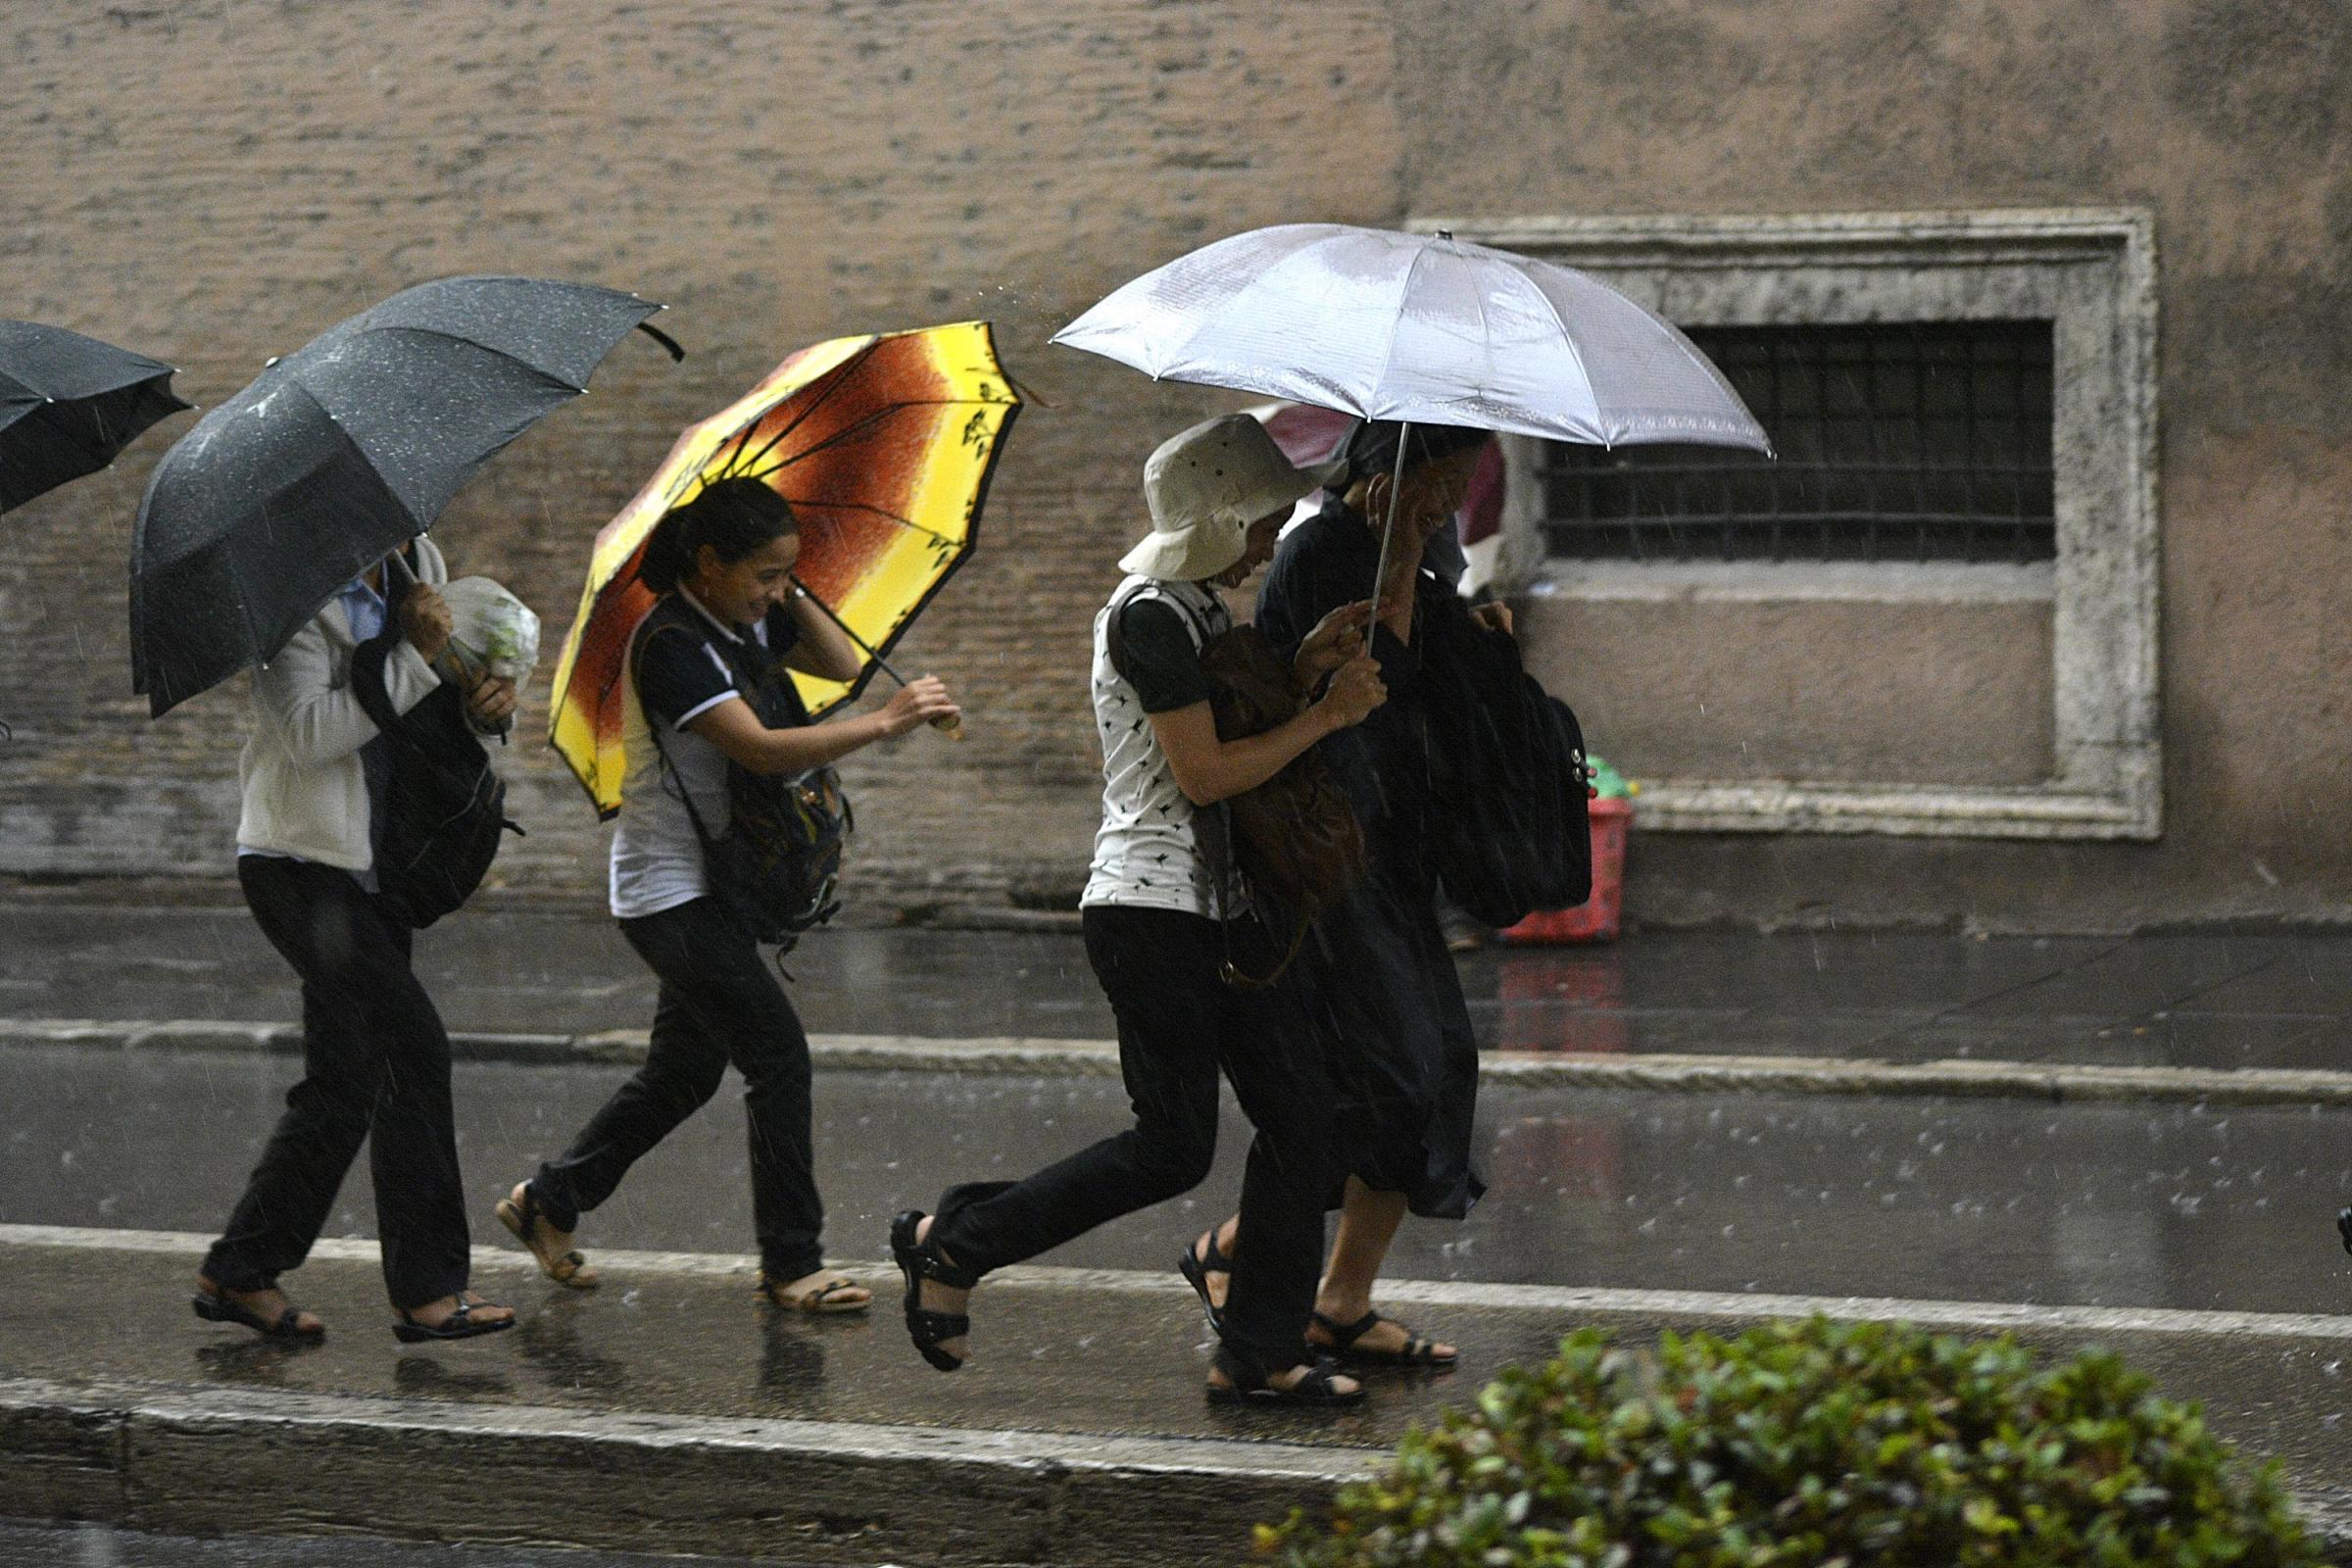  Maltempo, Protezione civile Campania: allerta meteo per l’arrivo di temporali